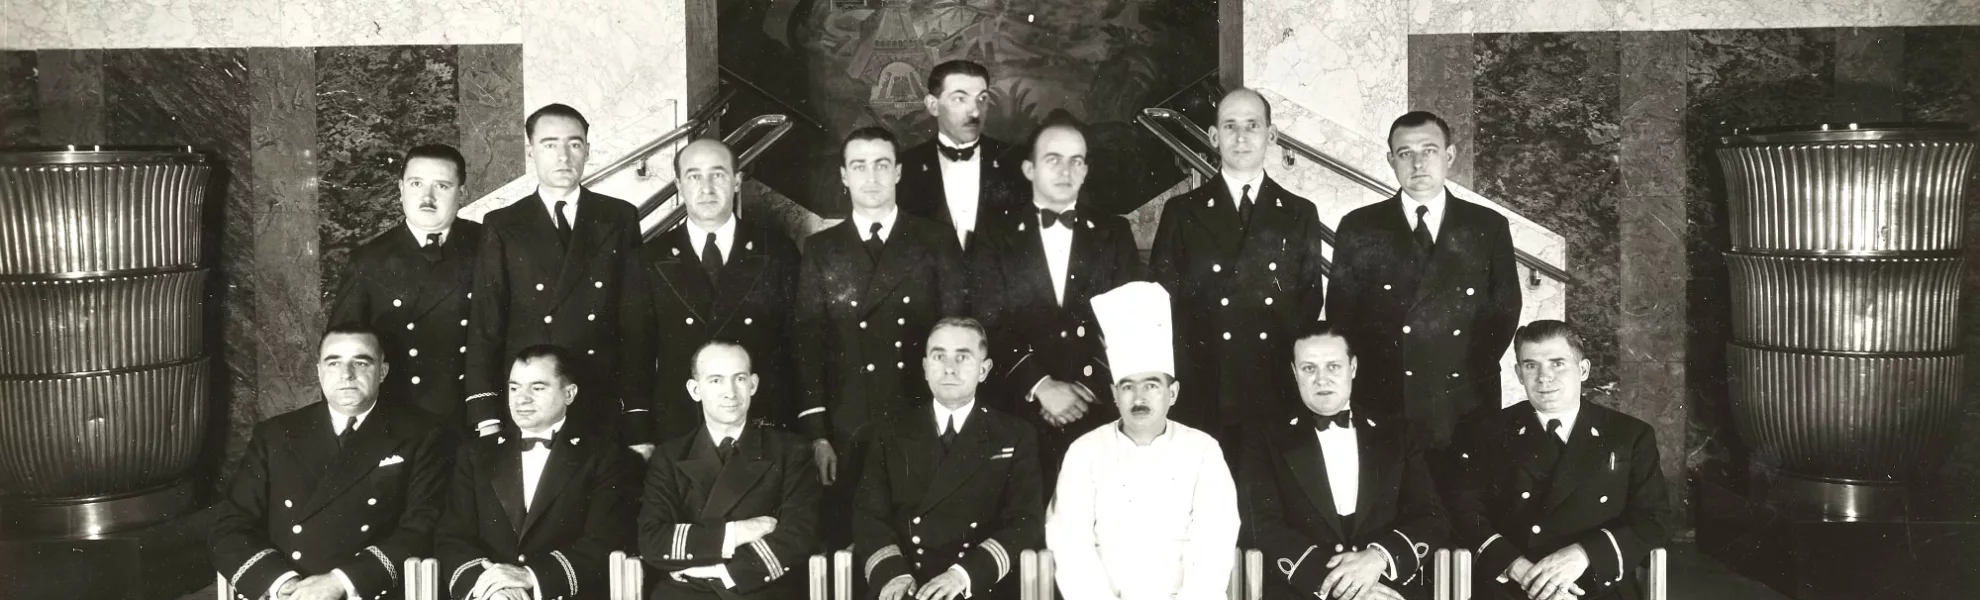 Photographie de groupe des membres d'équipage du paquebot transatlantique Ile-de-France (1927) en octobre 1937 dans la salle à manger du navire.